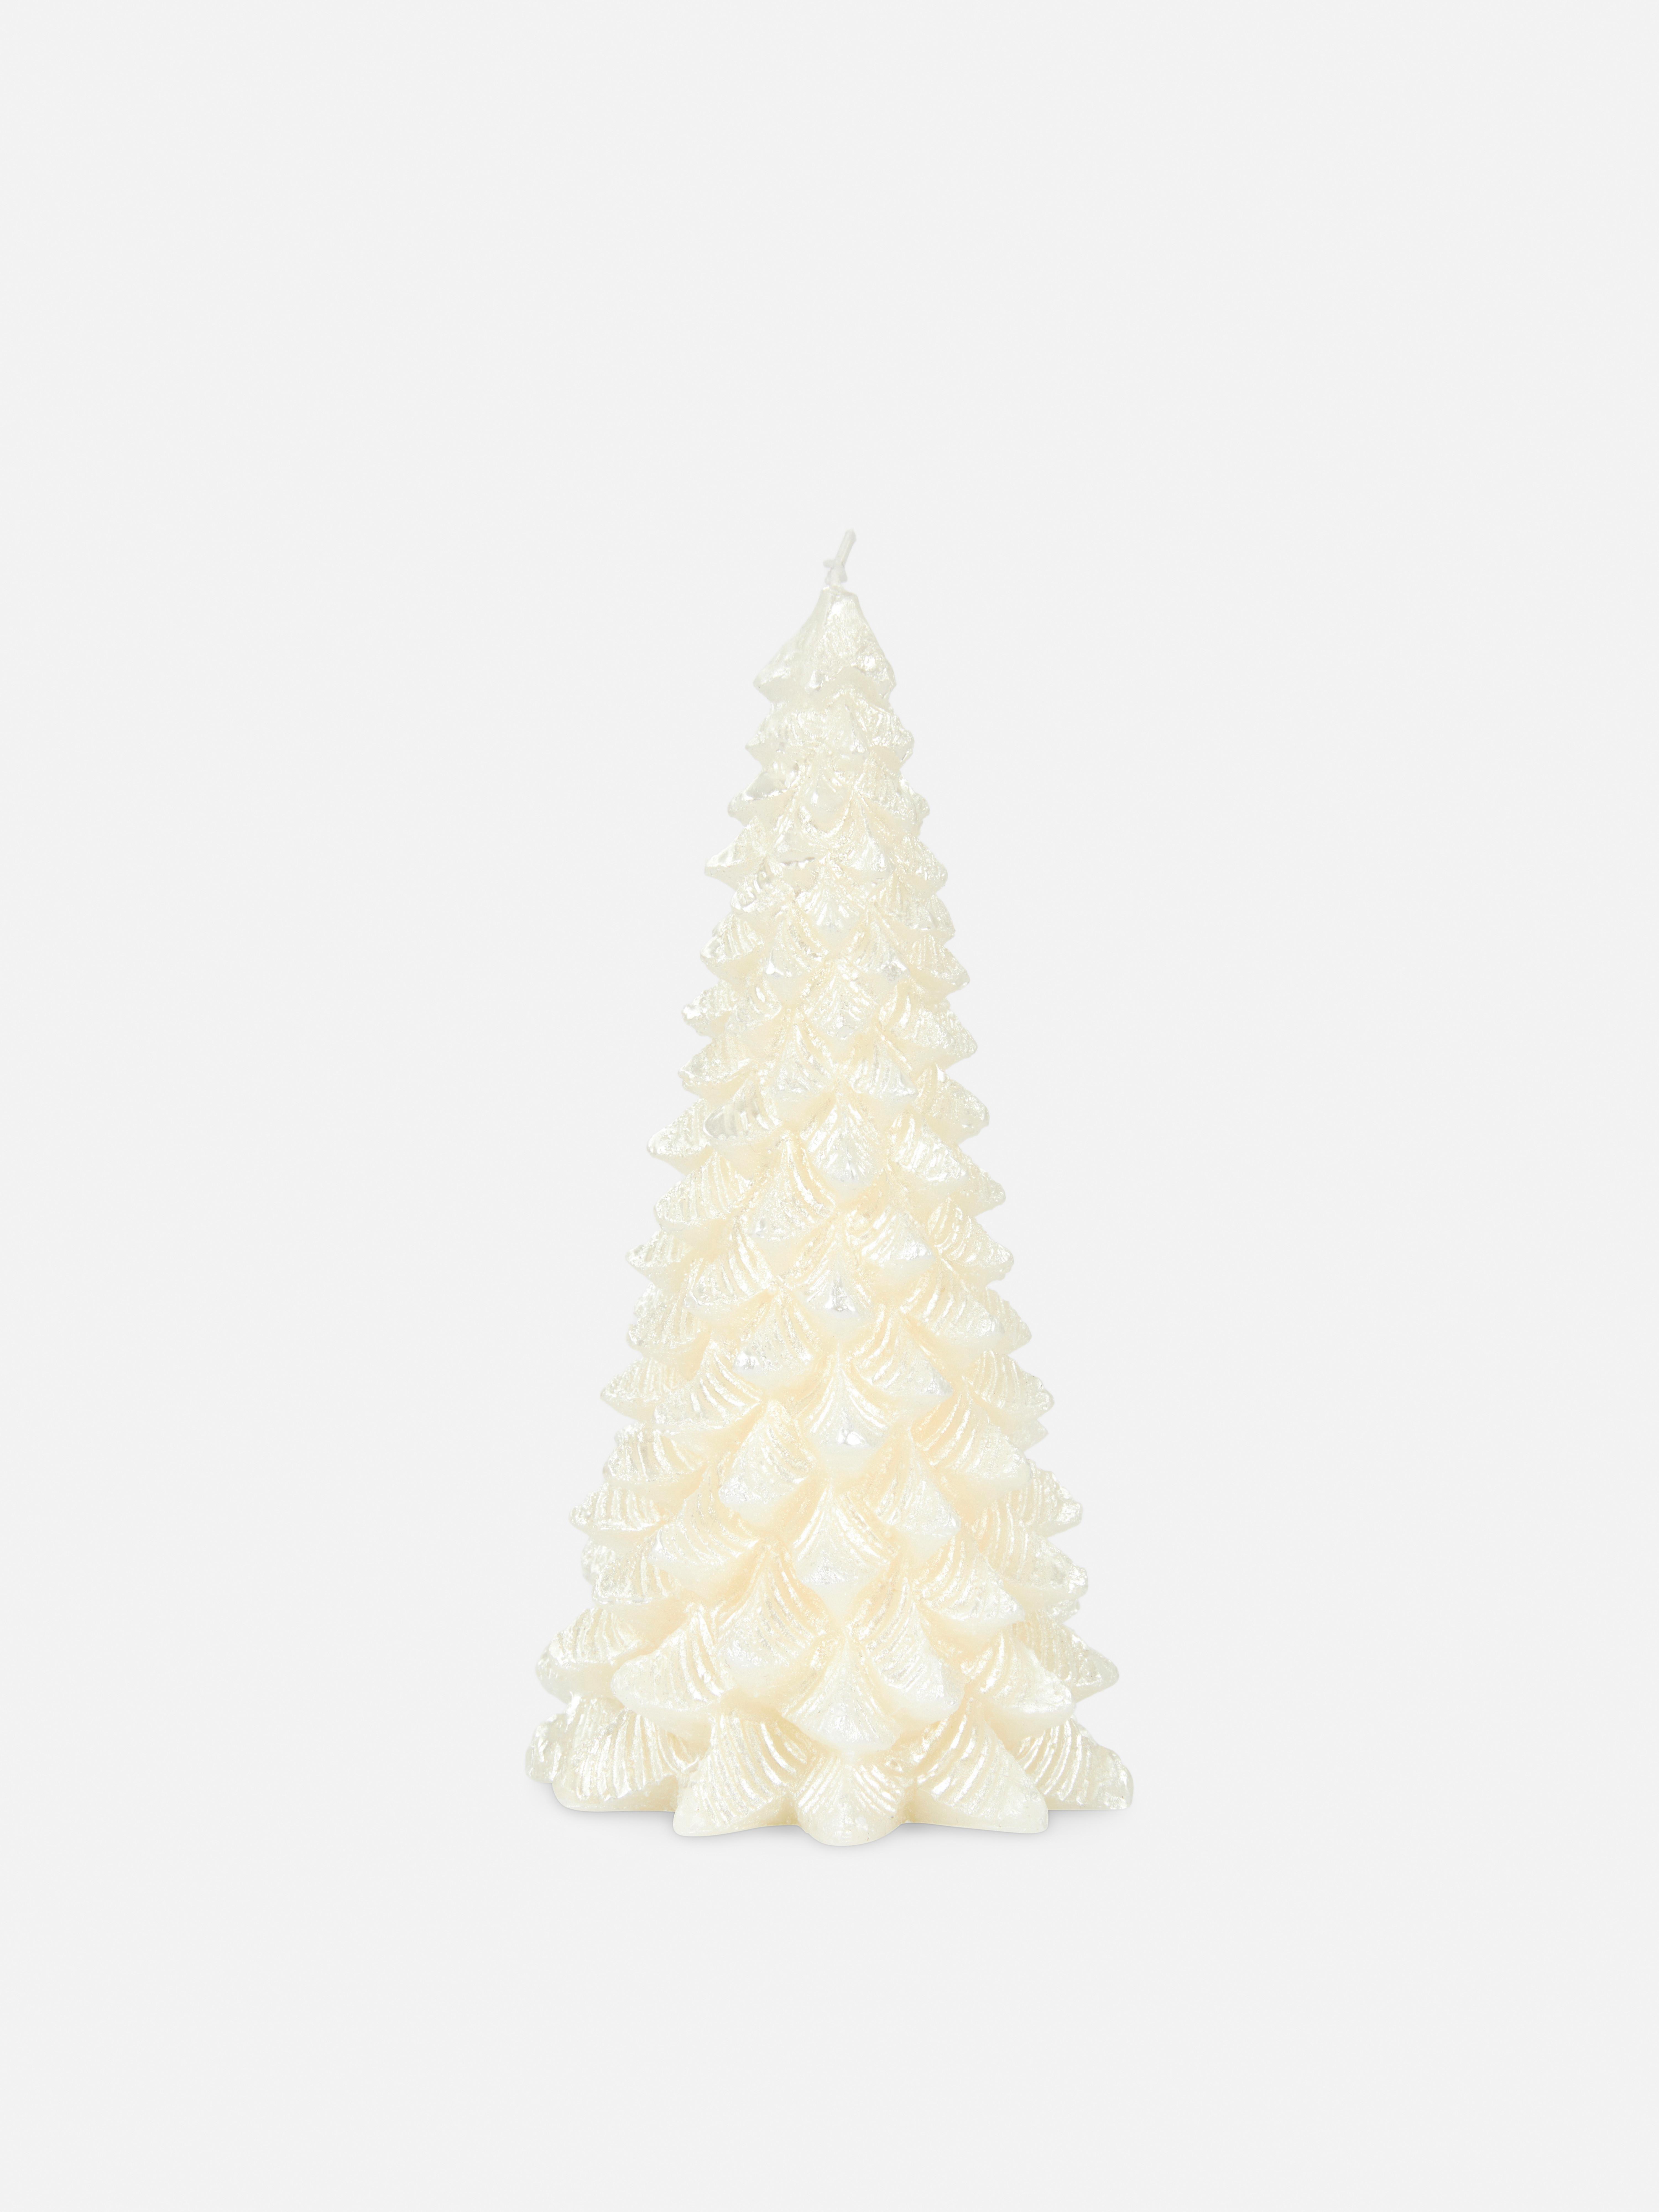 Candela a forma di albero di Natale